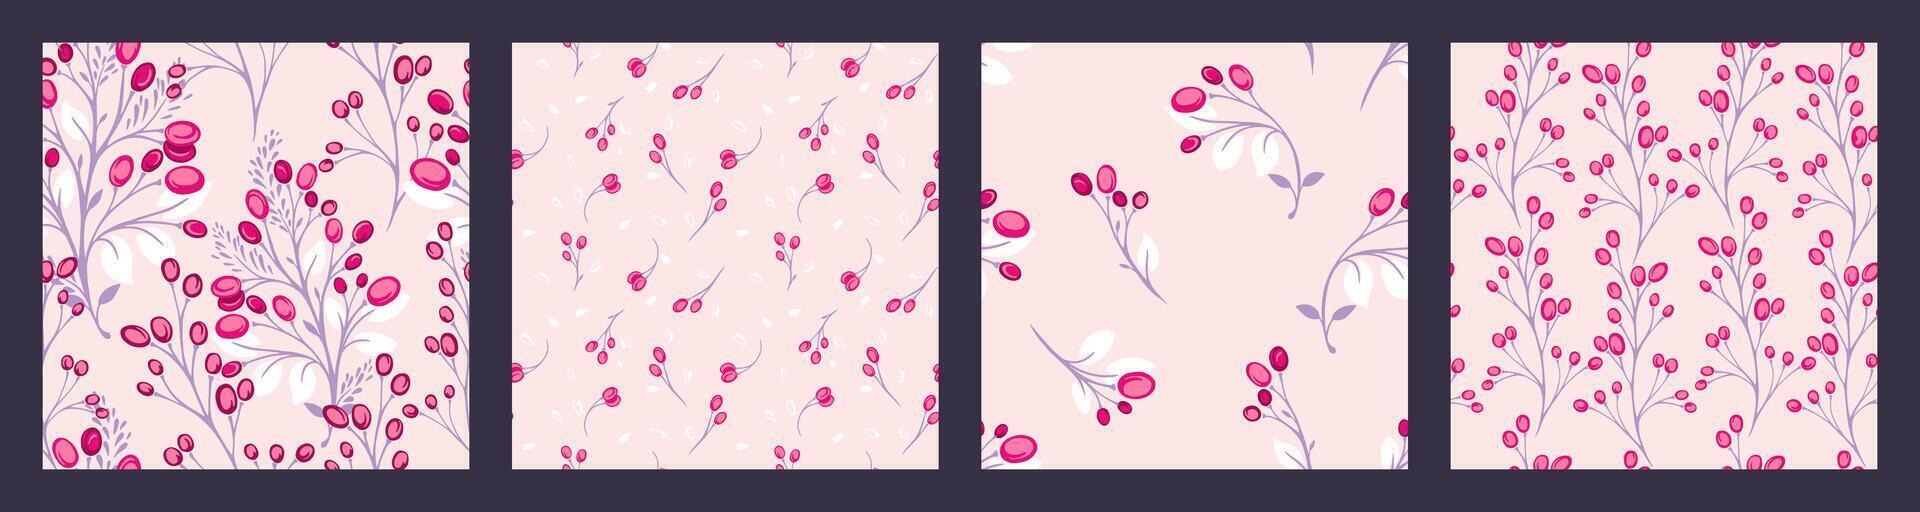 pastell ljus rosa collage av uppsättning sömlös mönster med kreativ, abstrakt grenar mycket liten löv och stiliserade former bär, droppar, fläckar. vektor hand dragen skiss. mallar för design, utskrift